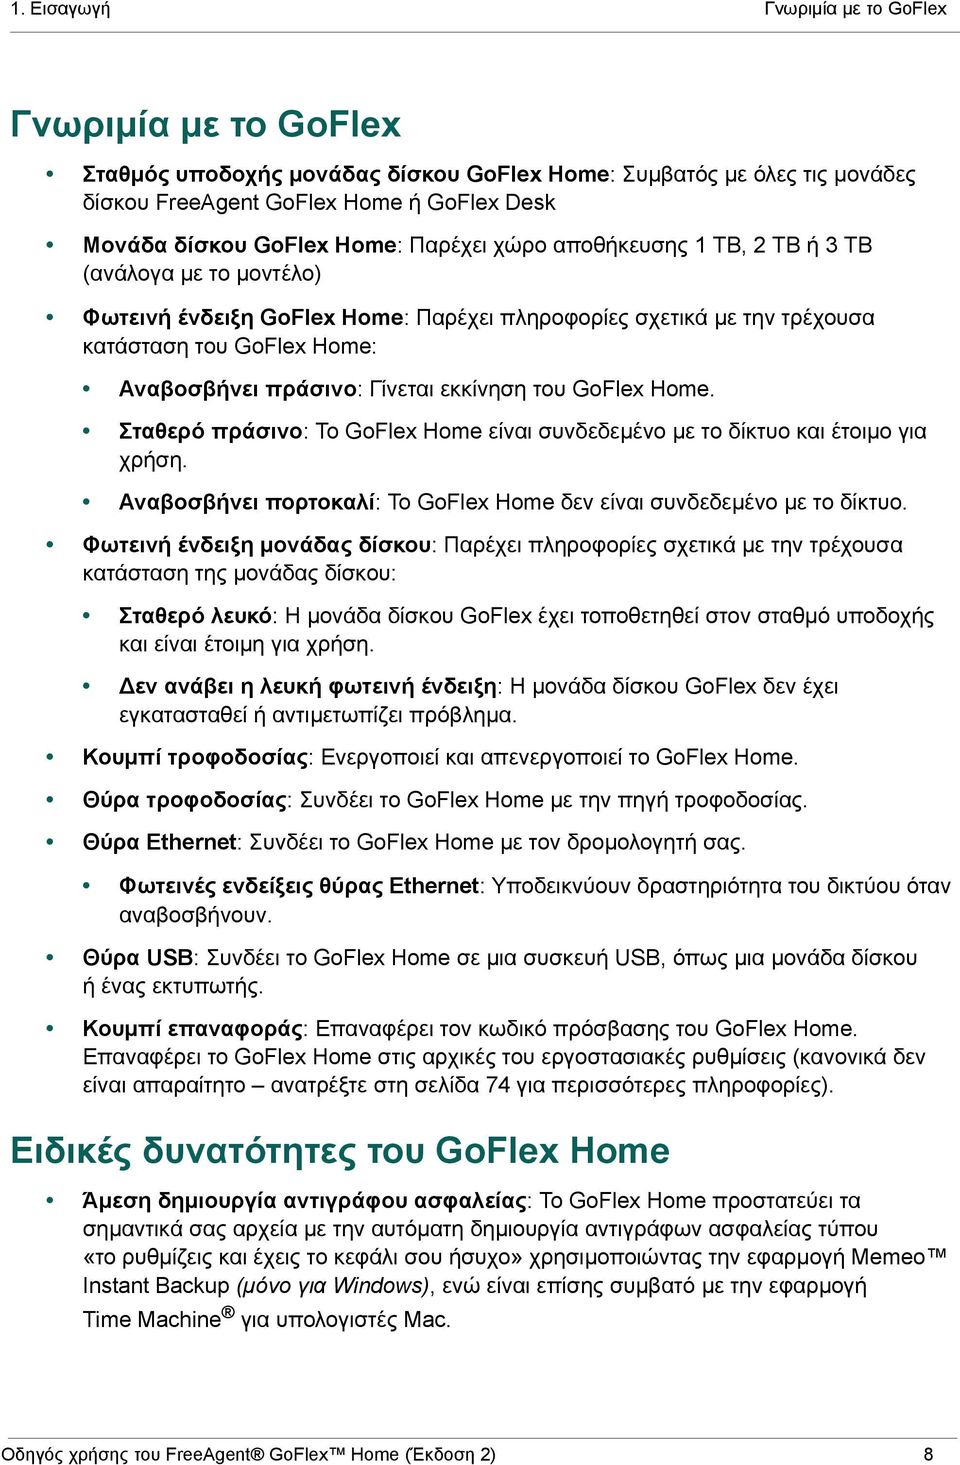 εκκίνηση του GoFlex Home. Σταθερό πράσινο: Το GoFlex Home είναι συνδεδεμένο με το δίκτυο και έτοιμο για χρήση. Αναβοσβήνει πορτοκαλί: Το GoFlex Home δεν είναι συνδεδεμένο με το δίκτυο.